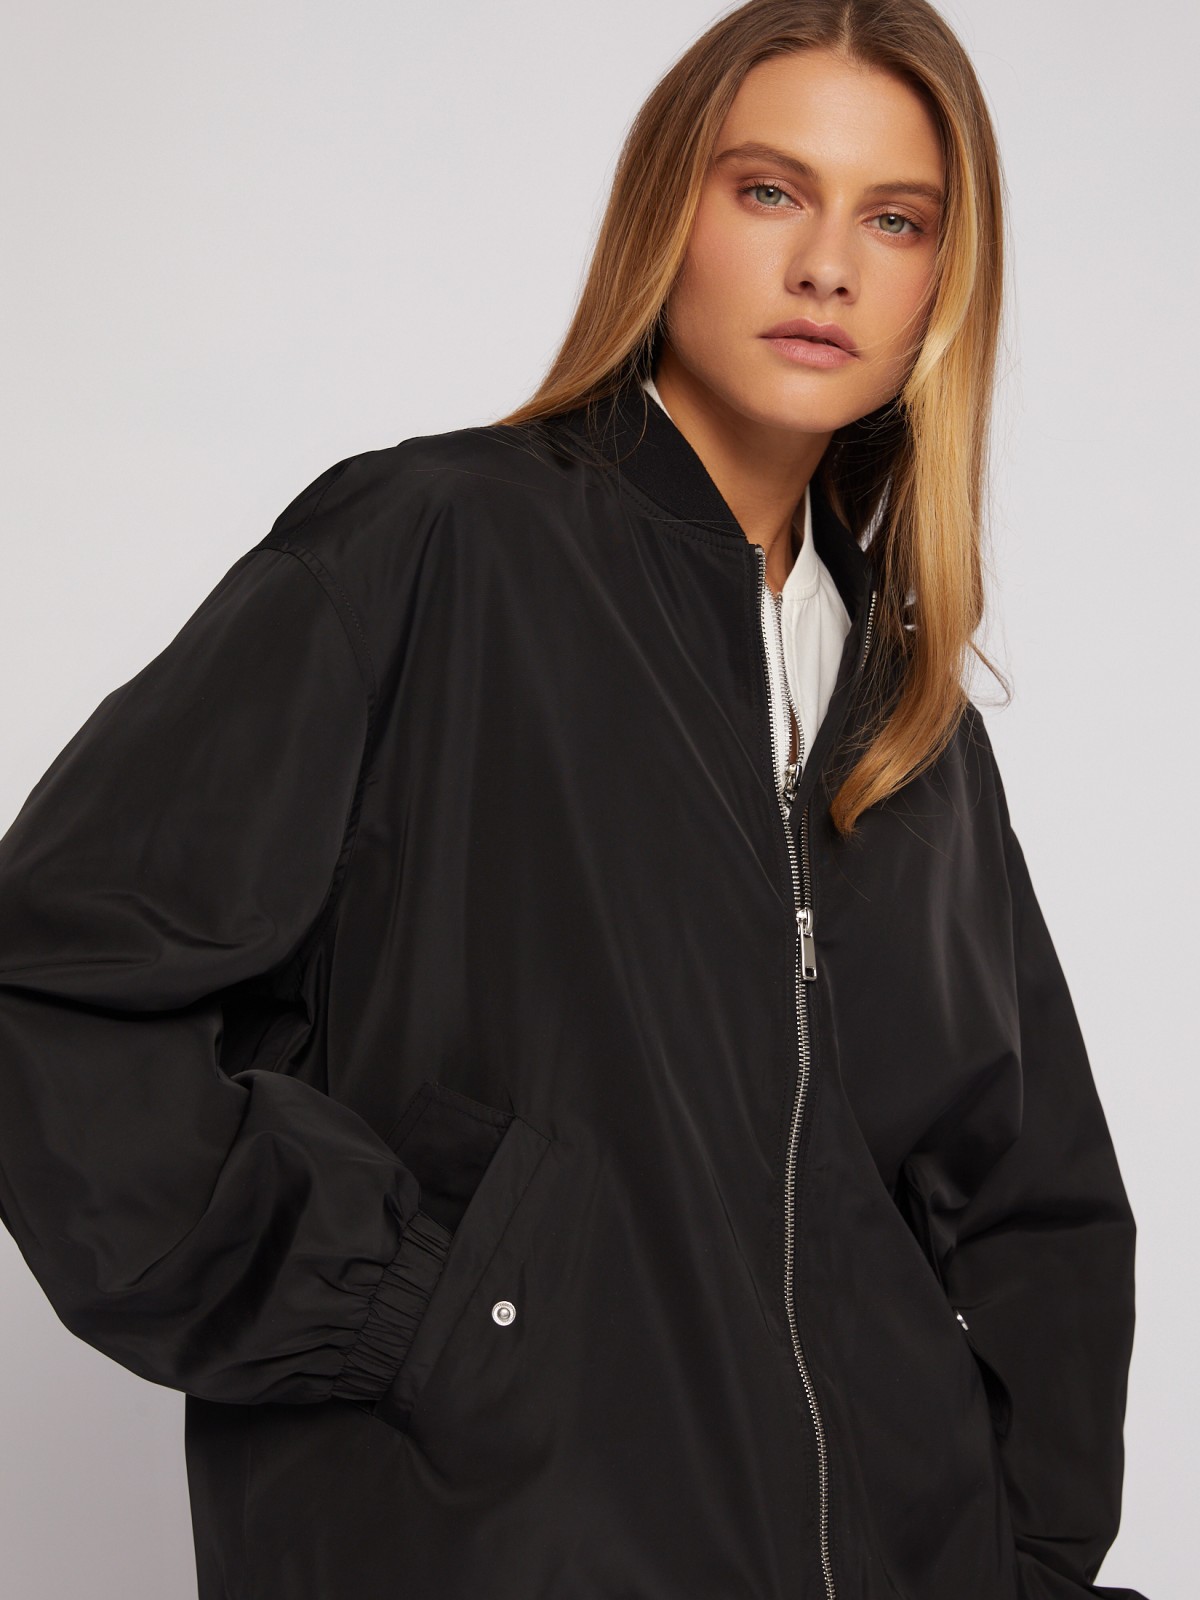 Лёгкая куртка-бомбер на молнии zolla 024215639194, цвет черный, размер XS - фото 3